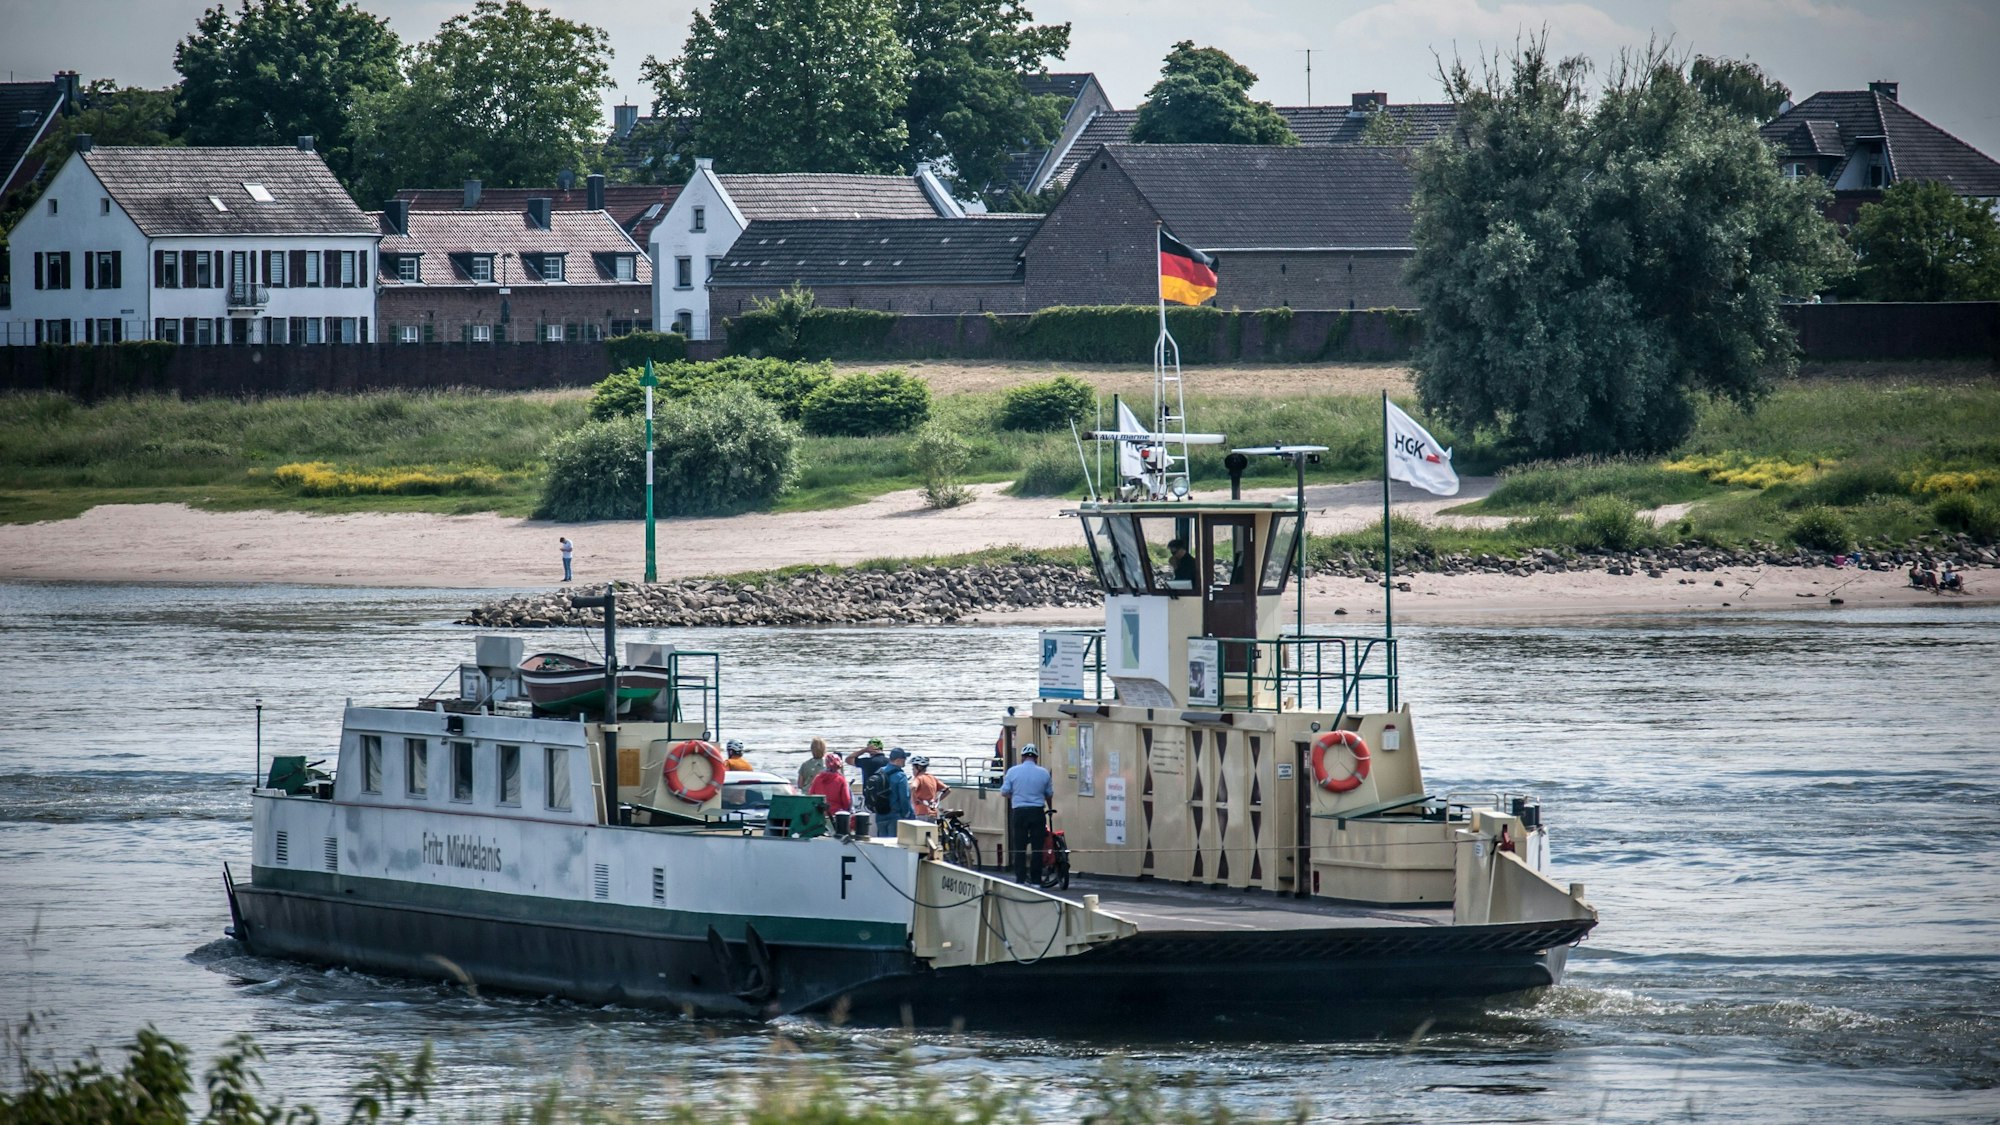 Die Rheinfähre fährt auf dem Rhein zwischen Leverkusen-Hitdorf und Köln-Langel. Ein Auto und mehrere Radfahrende sind auf dem Deck zu erkennen.